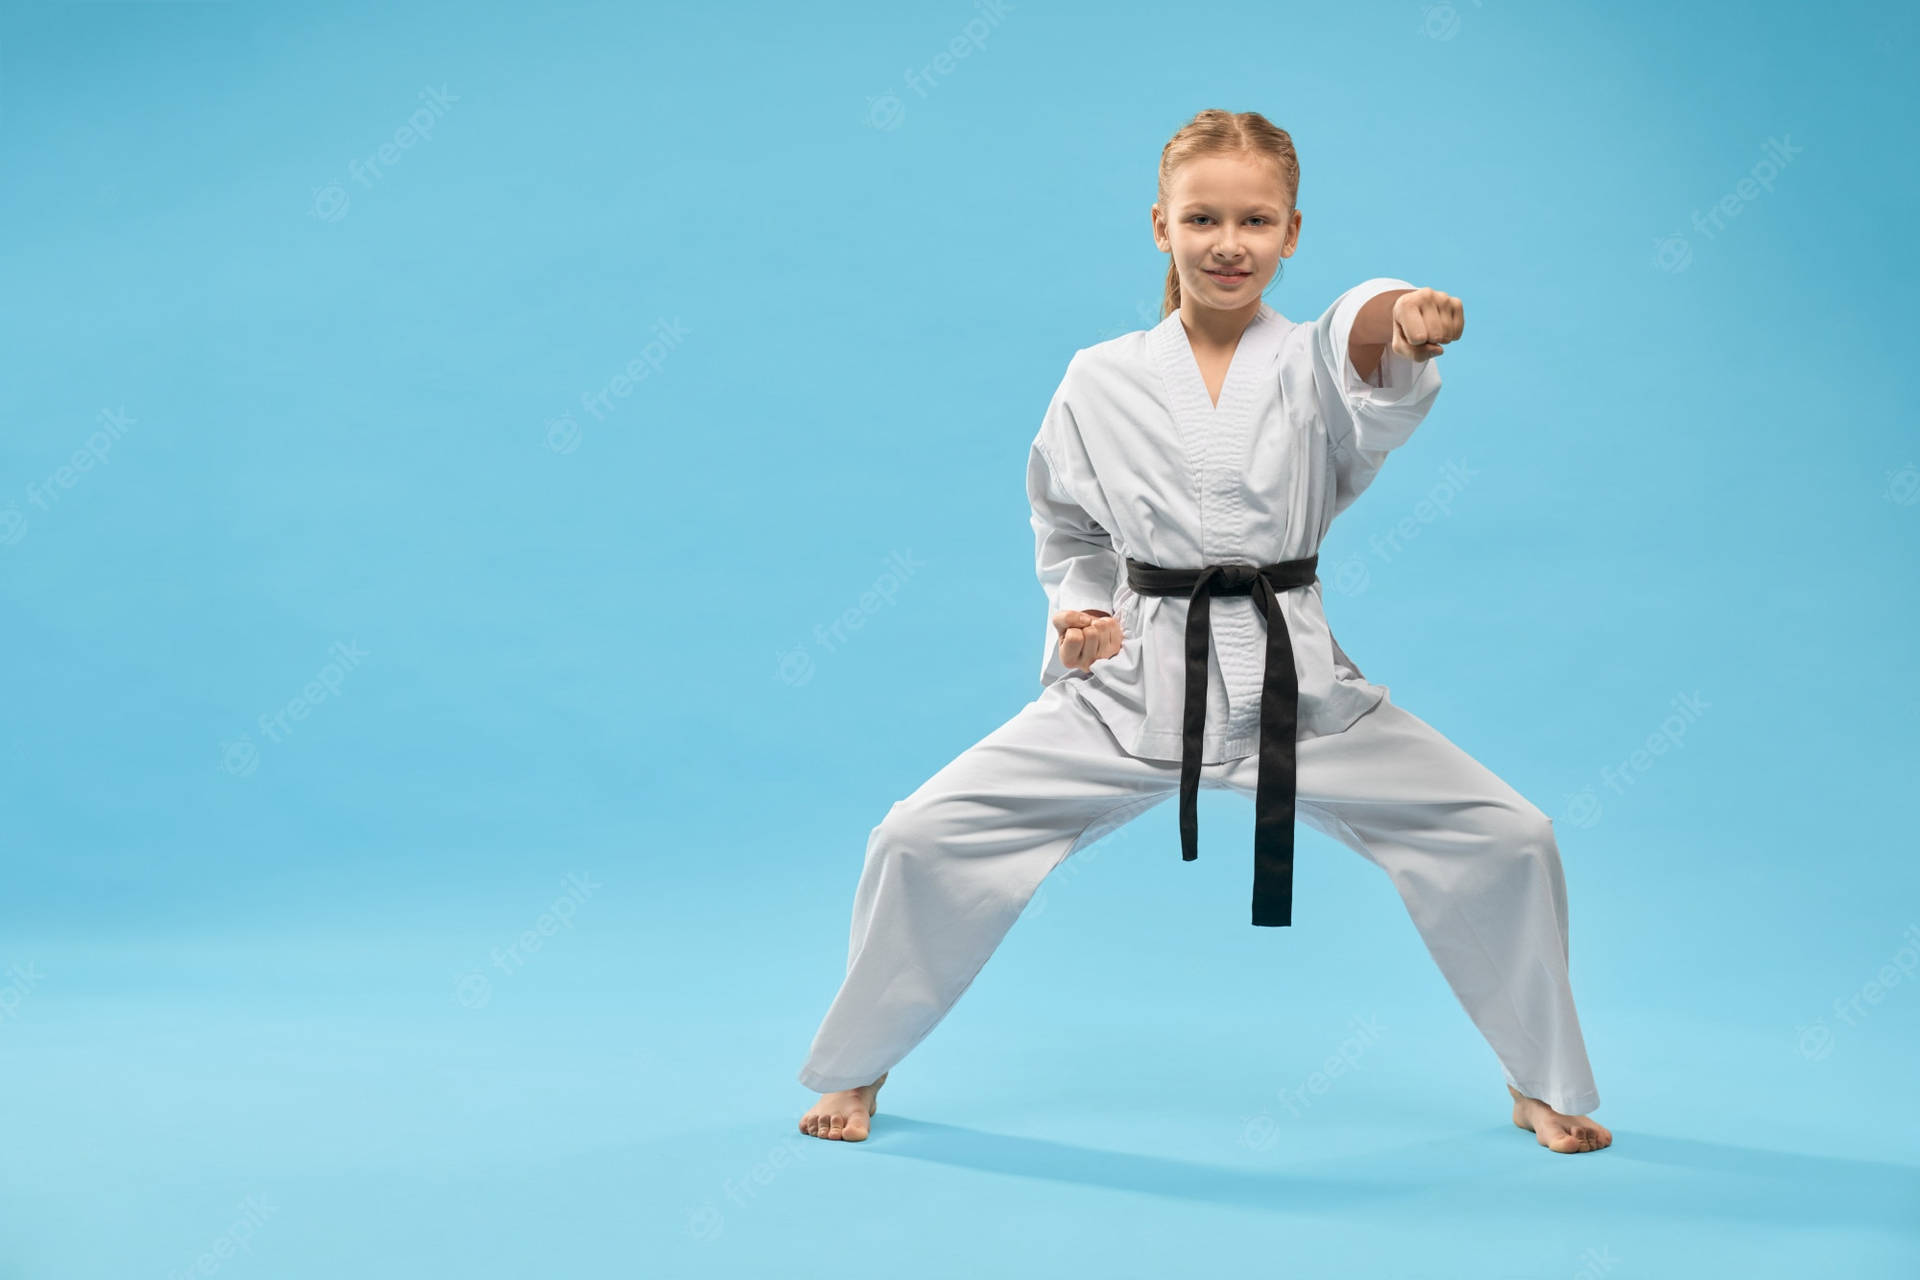 Karateflickai Posering, Blå Estetik. Wallpaper